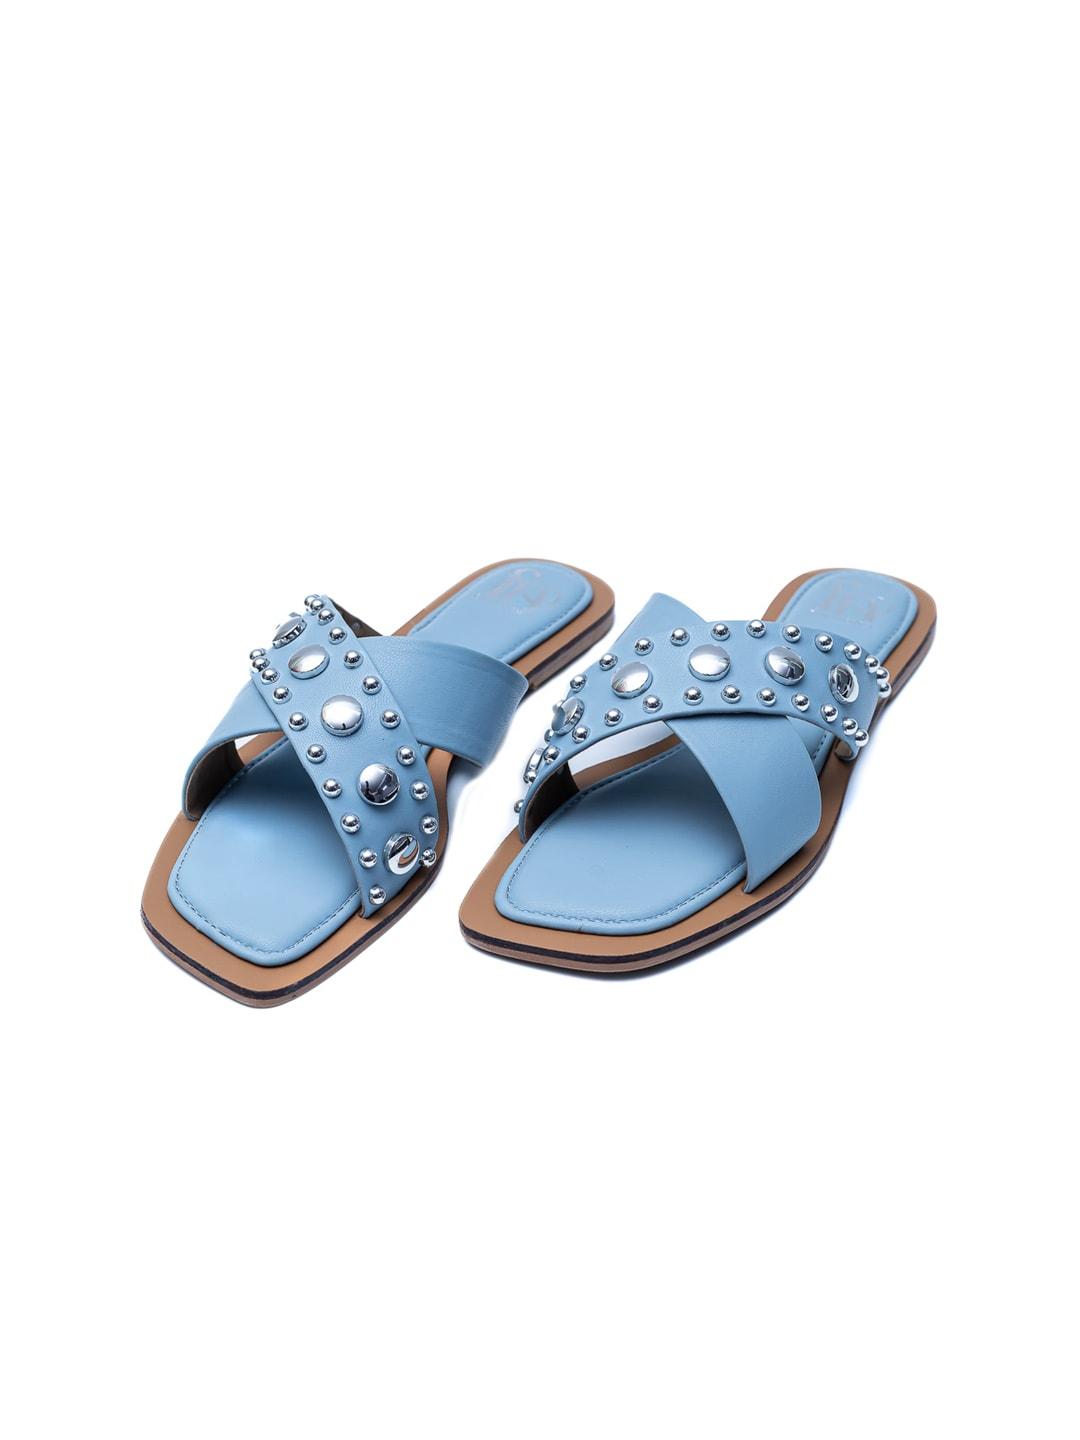 Dapper Feet-Fancy Nancy Embellished Open Toe Flats